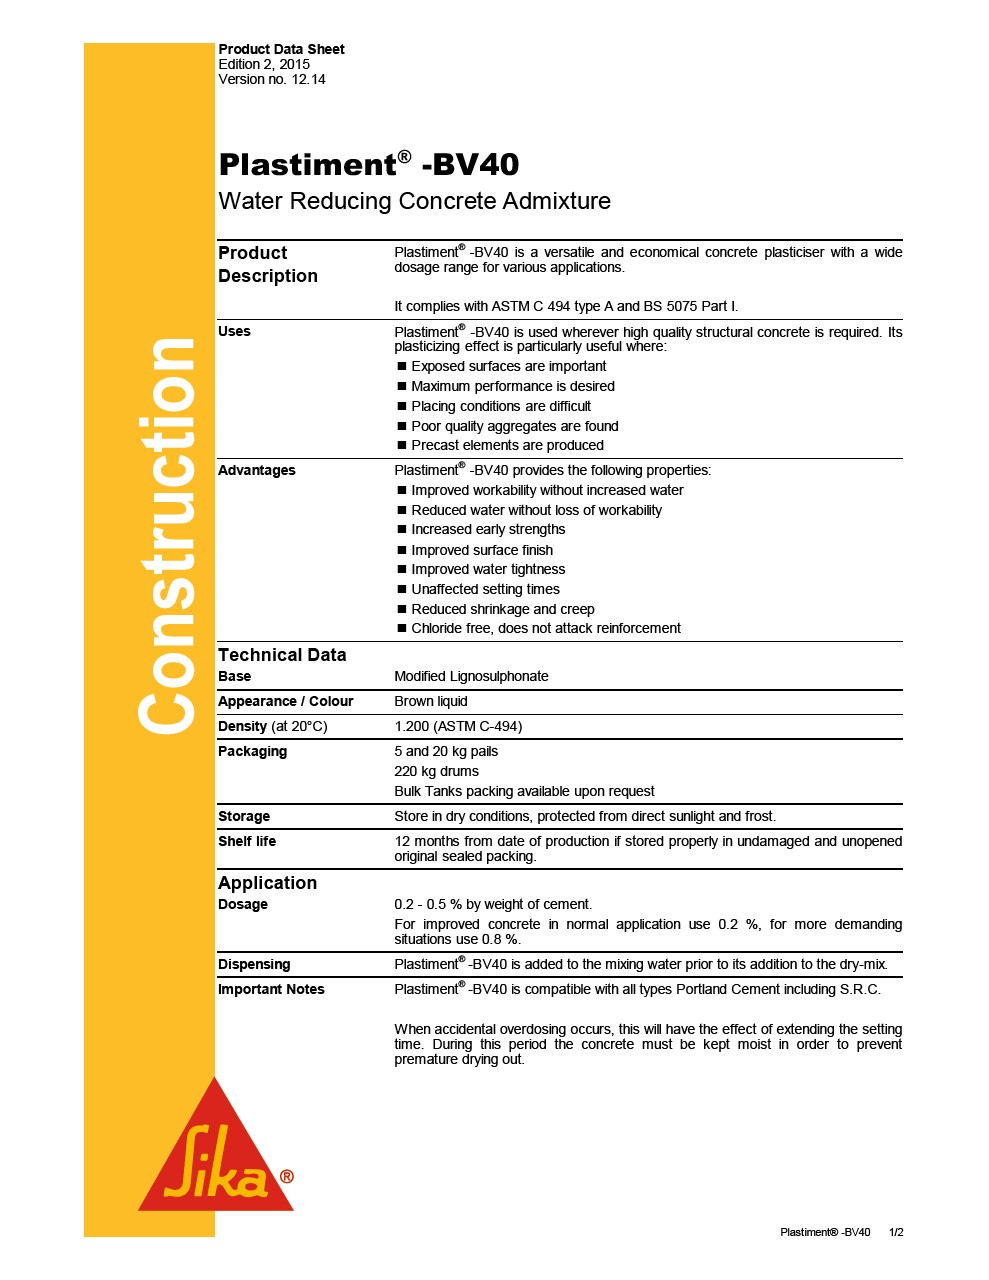 Plastiment -BV40